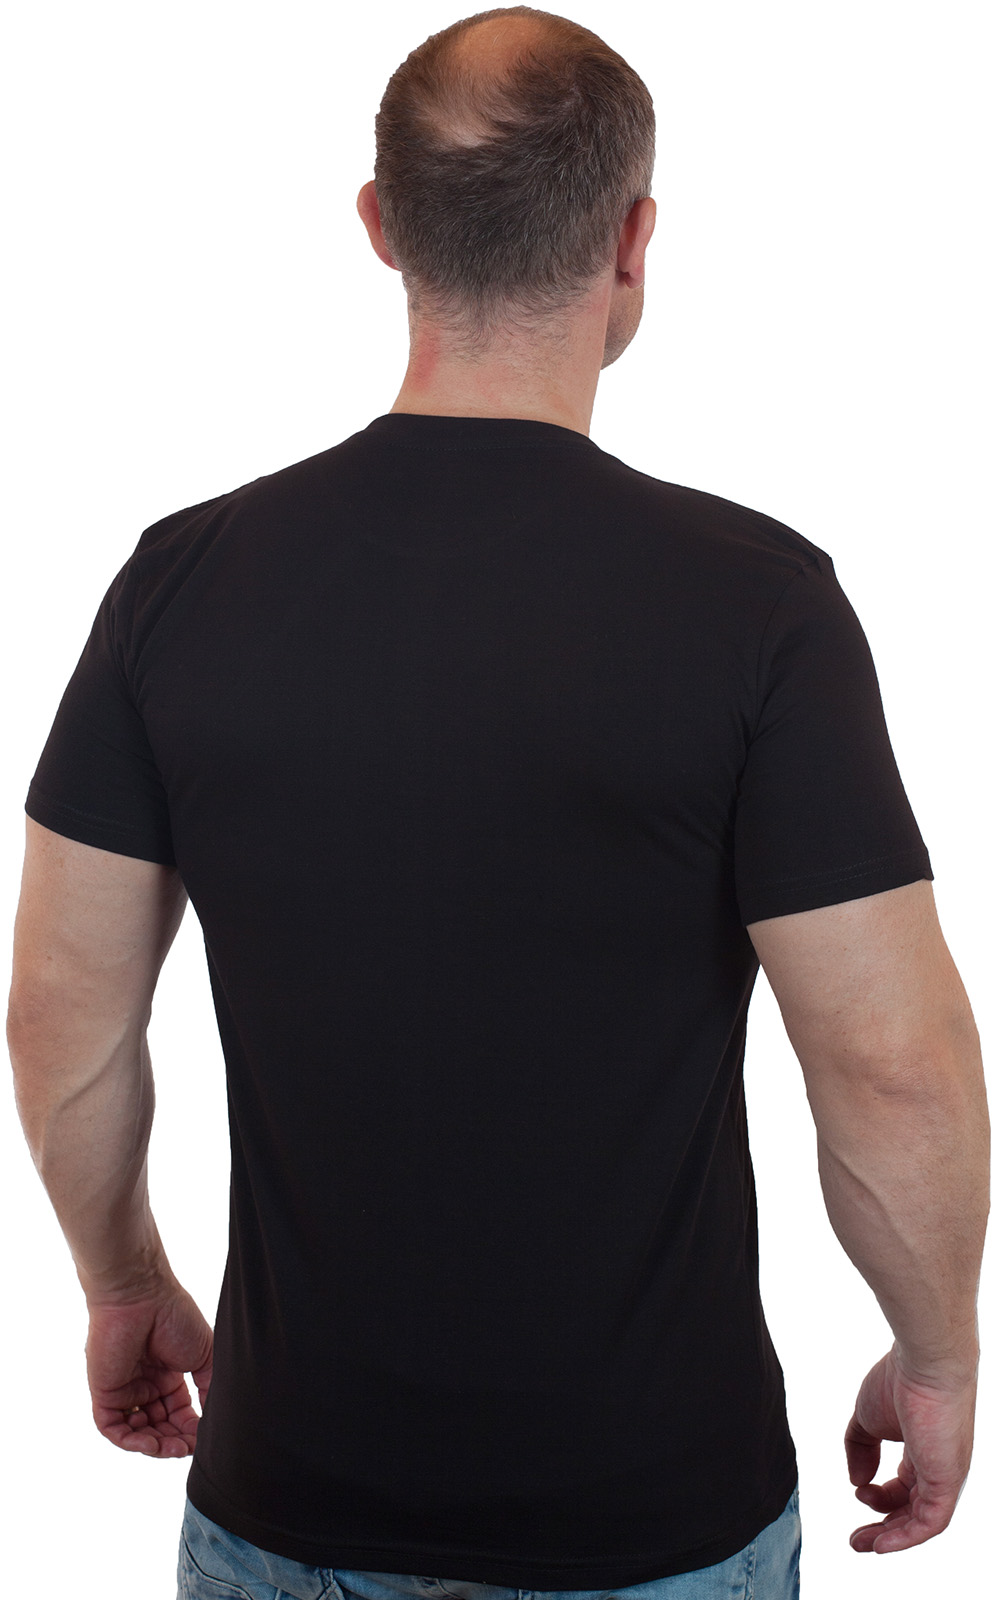 Чёрная футболка с термотрансфером "ВДВ" 